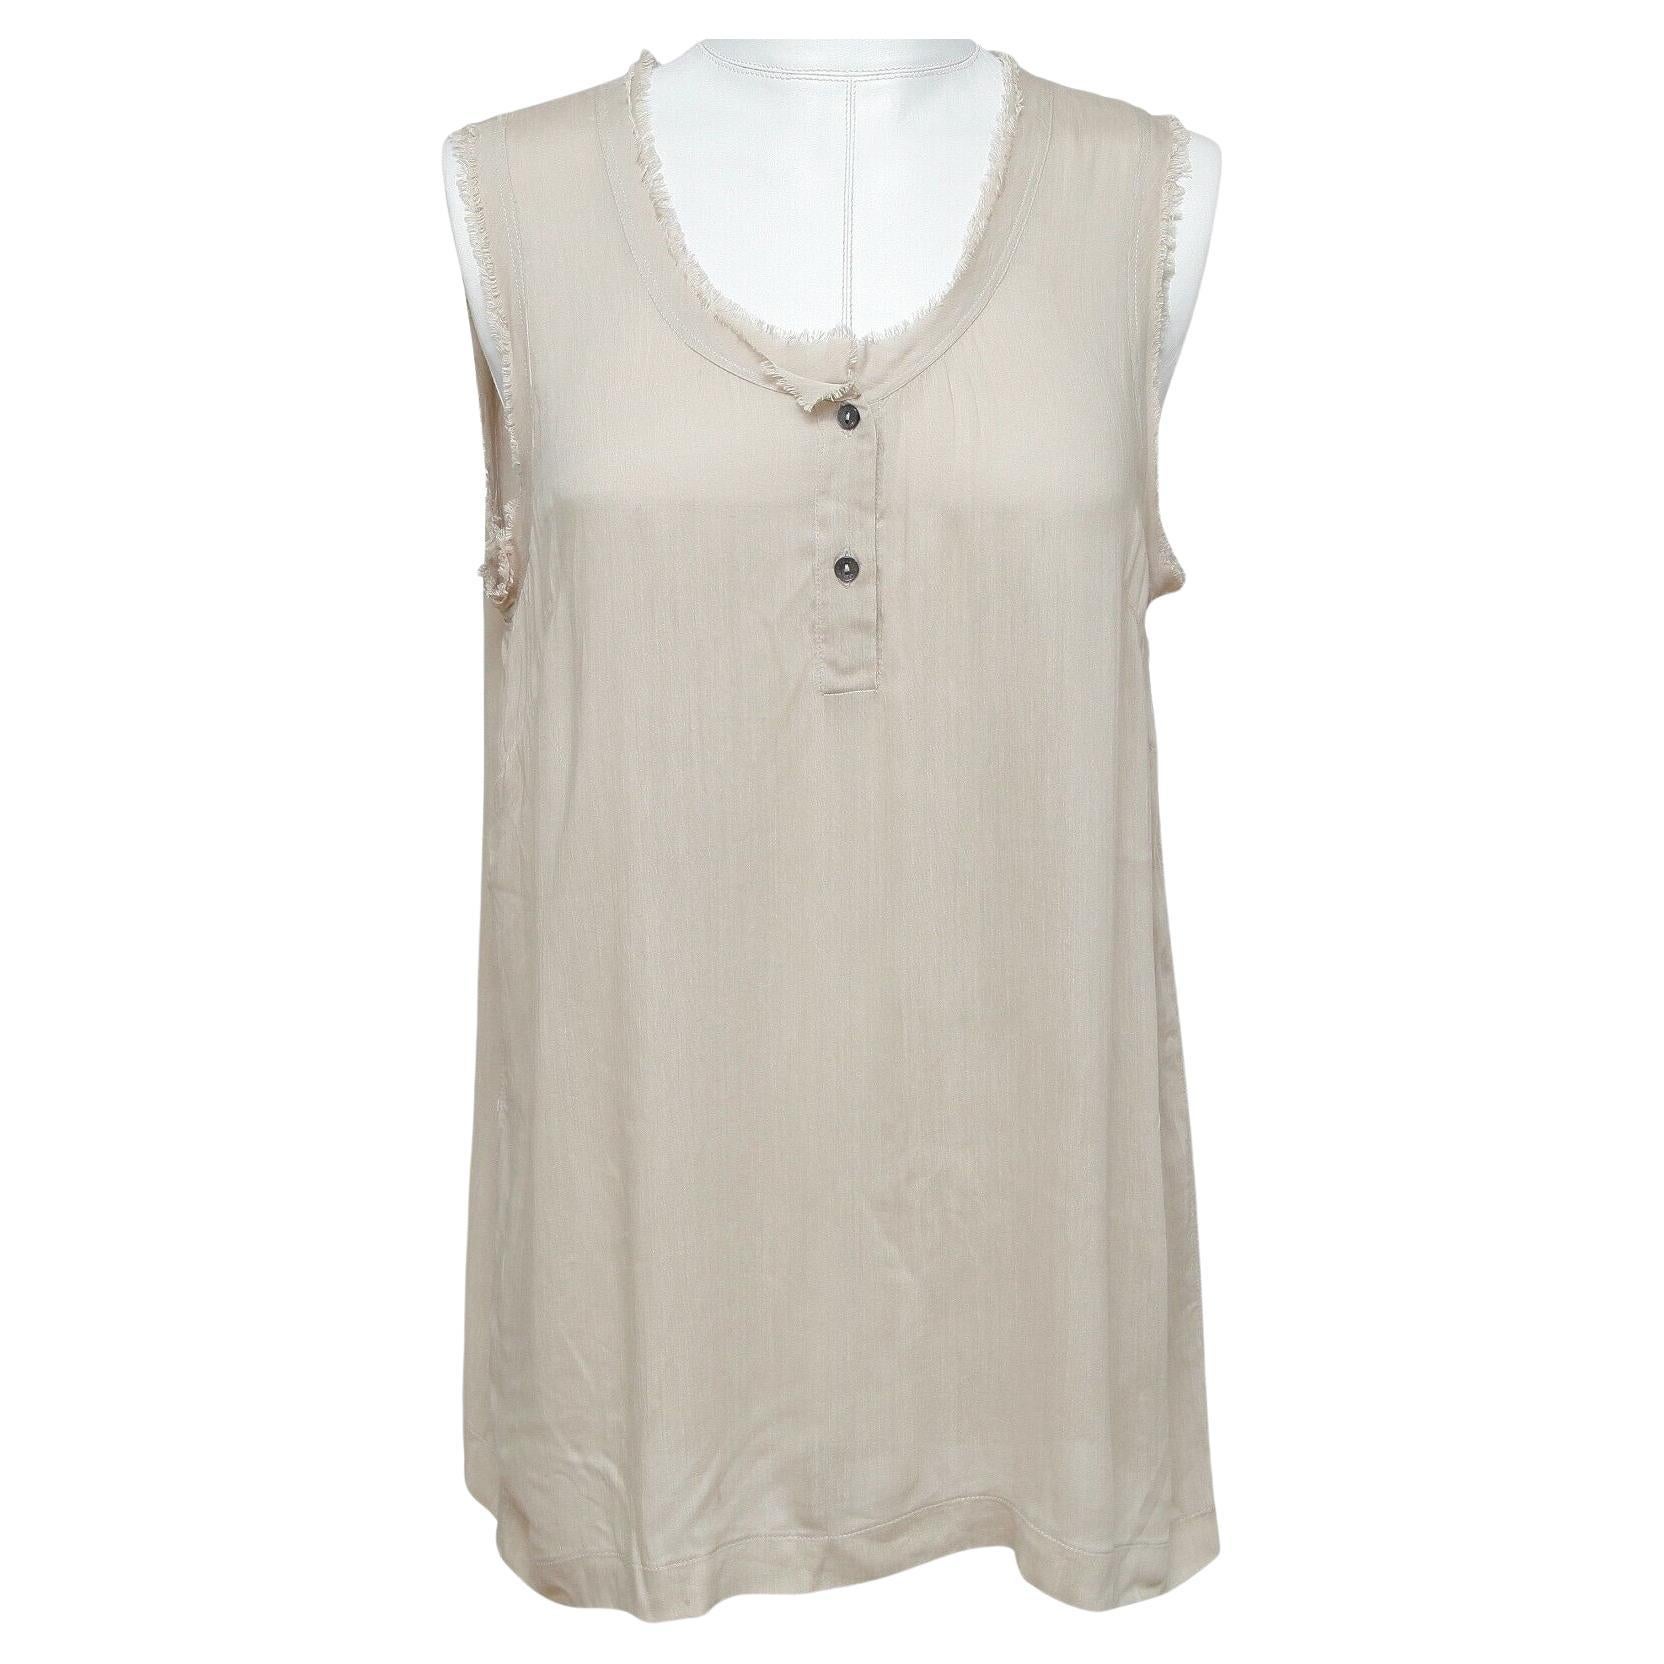 DOLCE & GABBANA Sleeveless Shirt Top Beige Buttons Viscose Silk Sz 42 For Sale